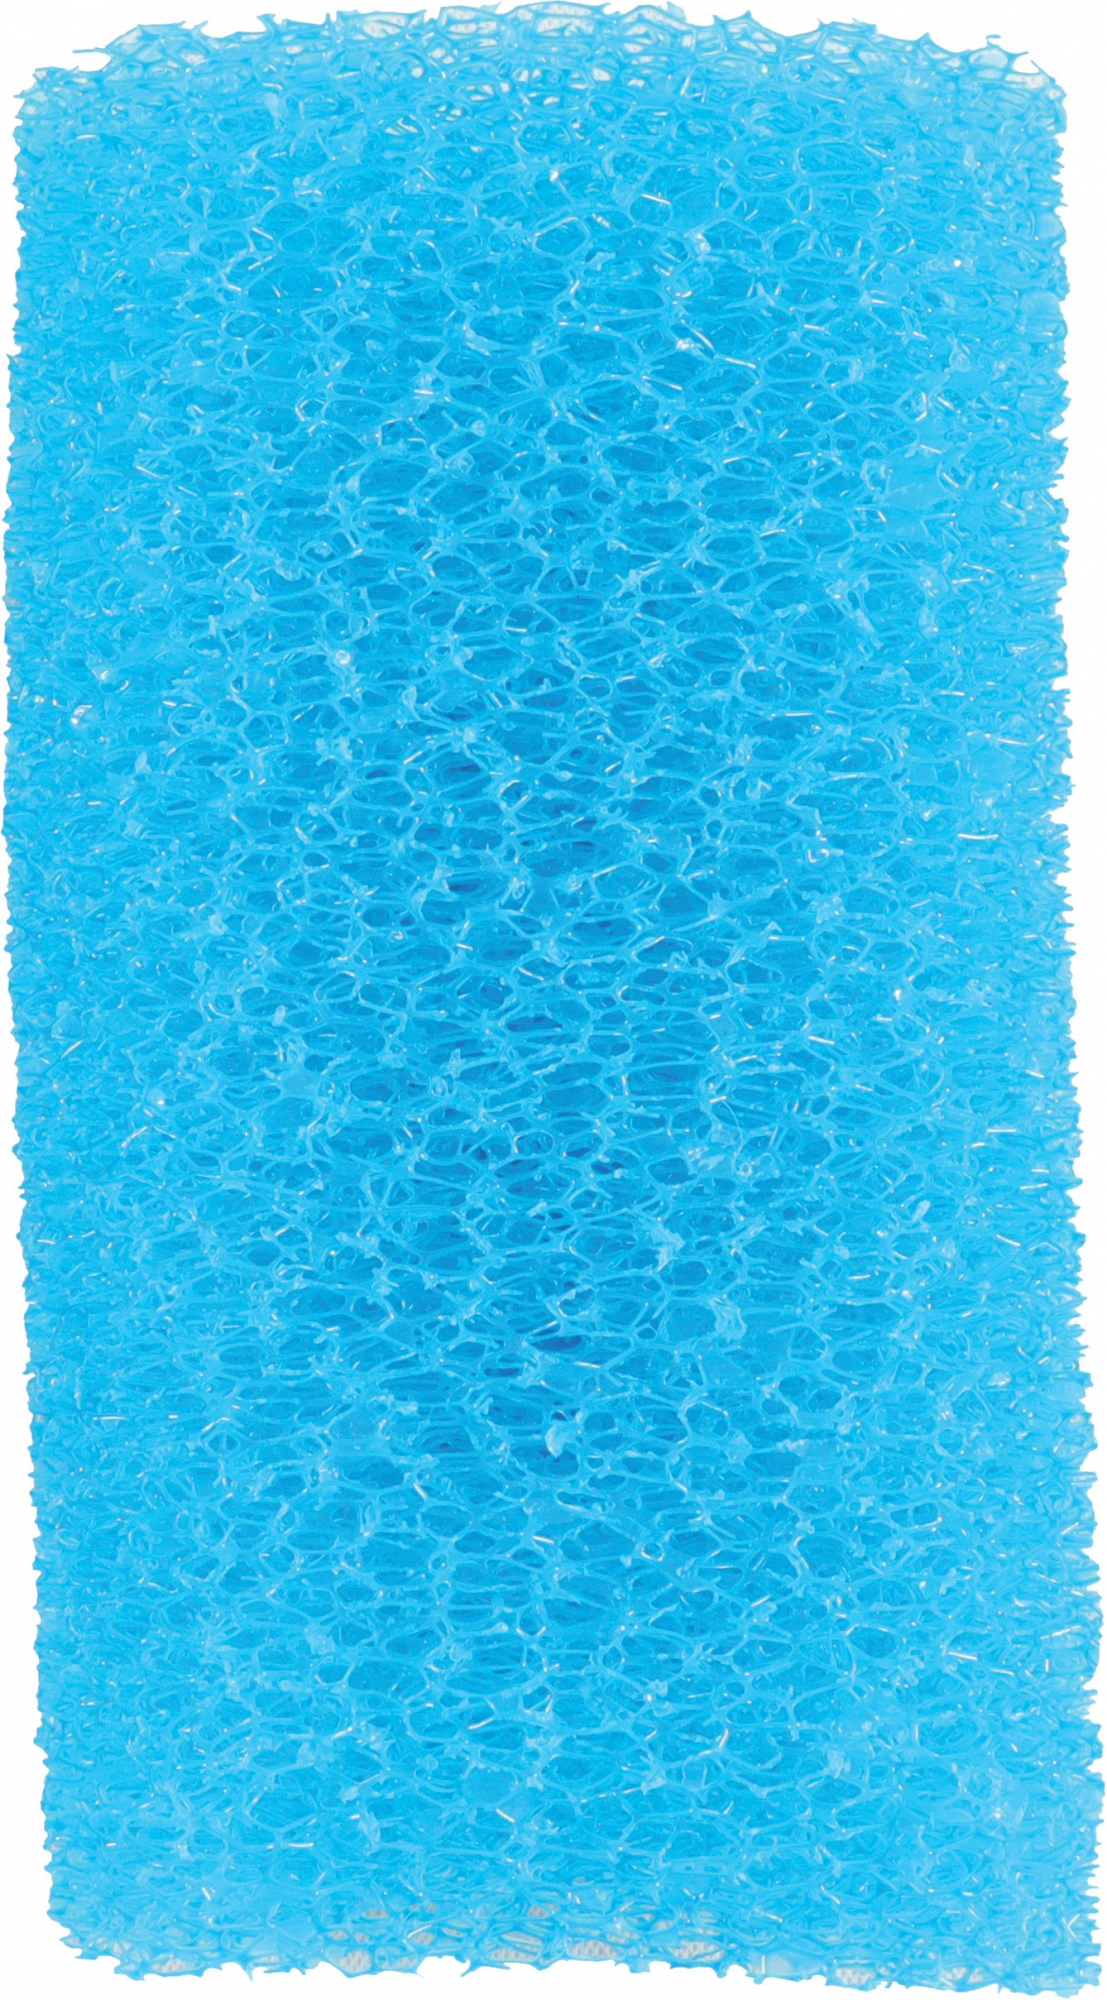 Blauwe spons voor filter Classic Aquaya